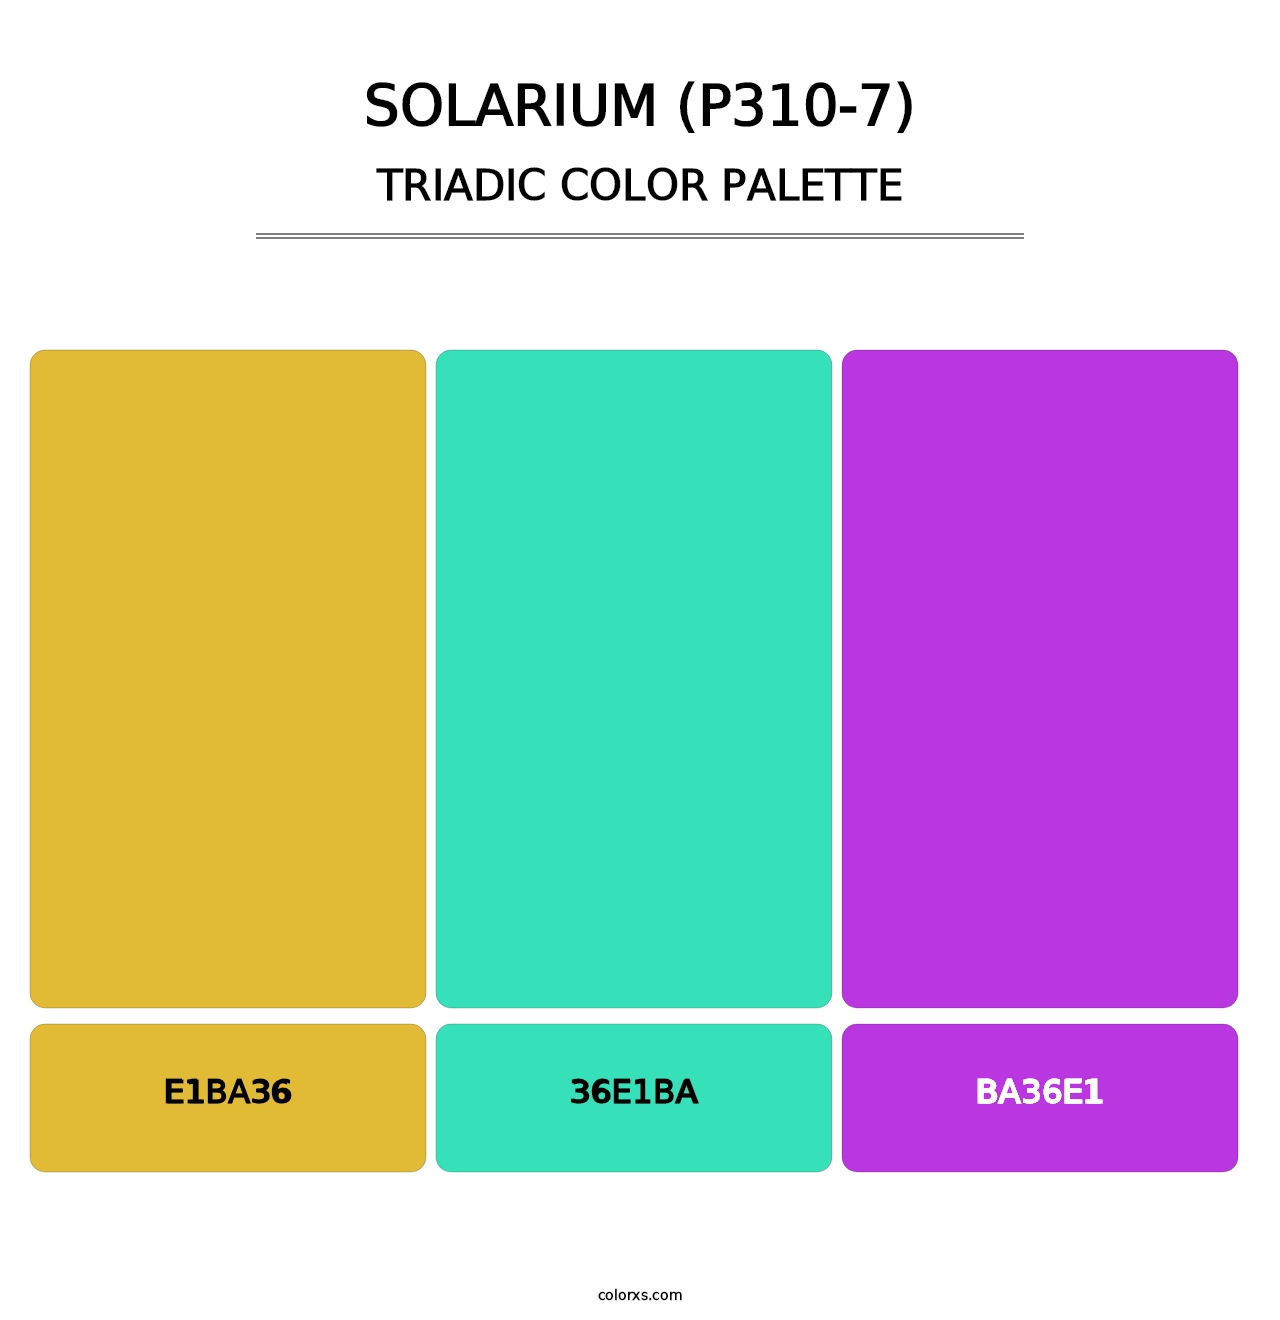 Solarium (P310-7) - Triadic Color Palette